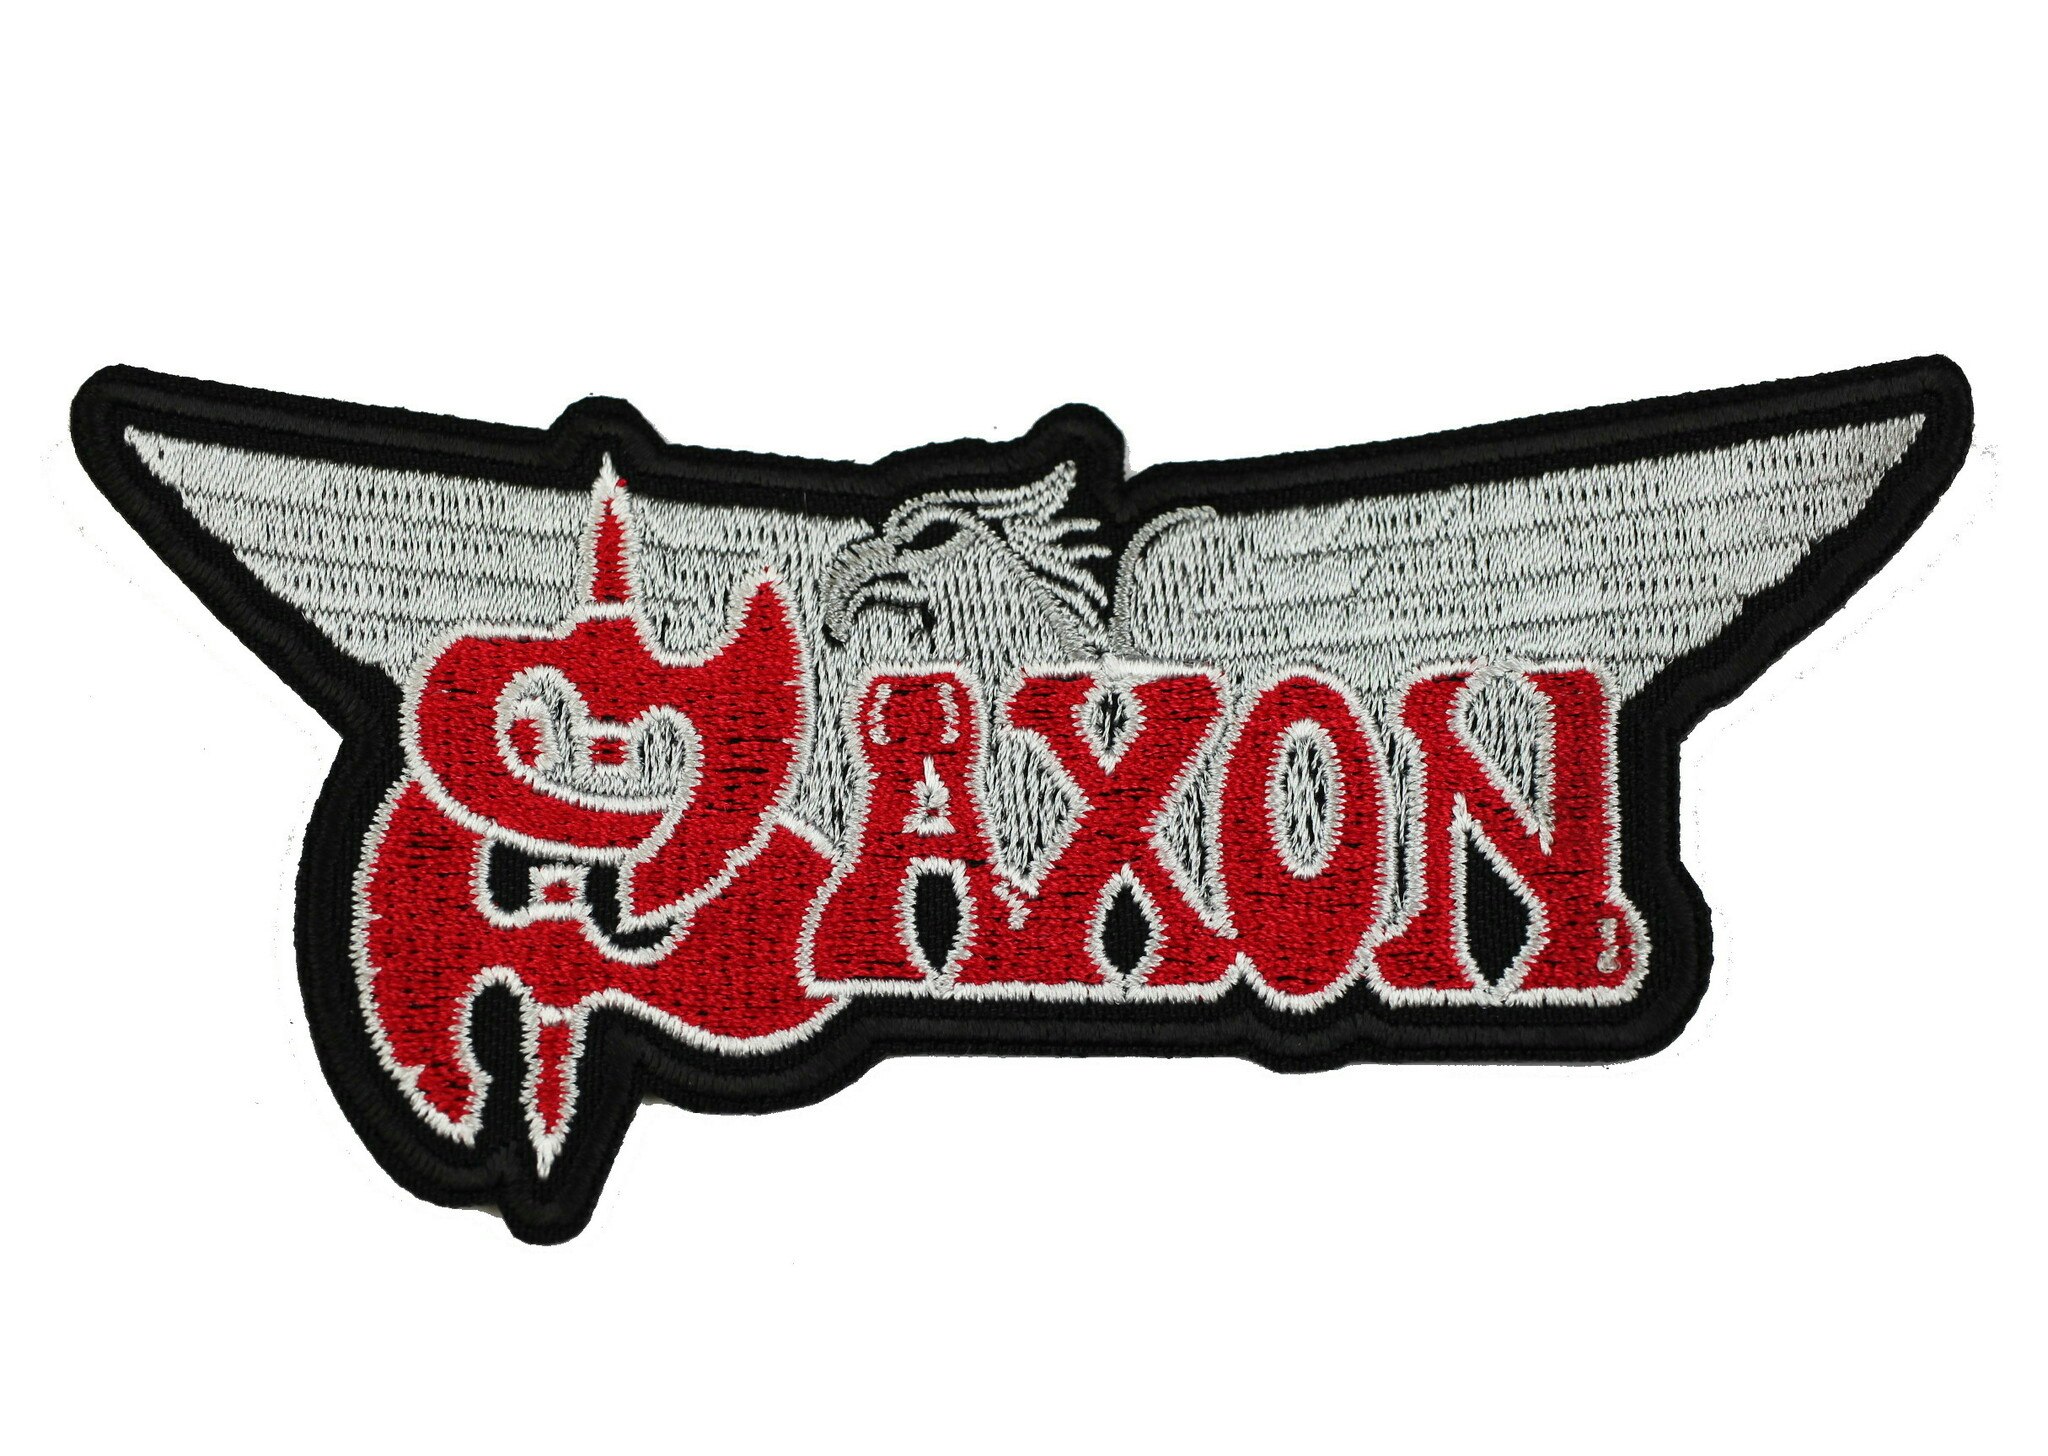 Saxon Eagle logo patch